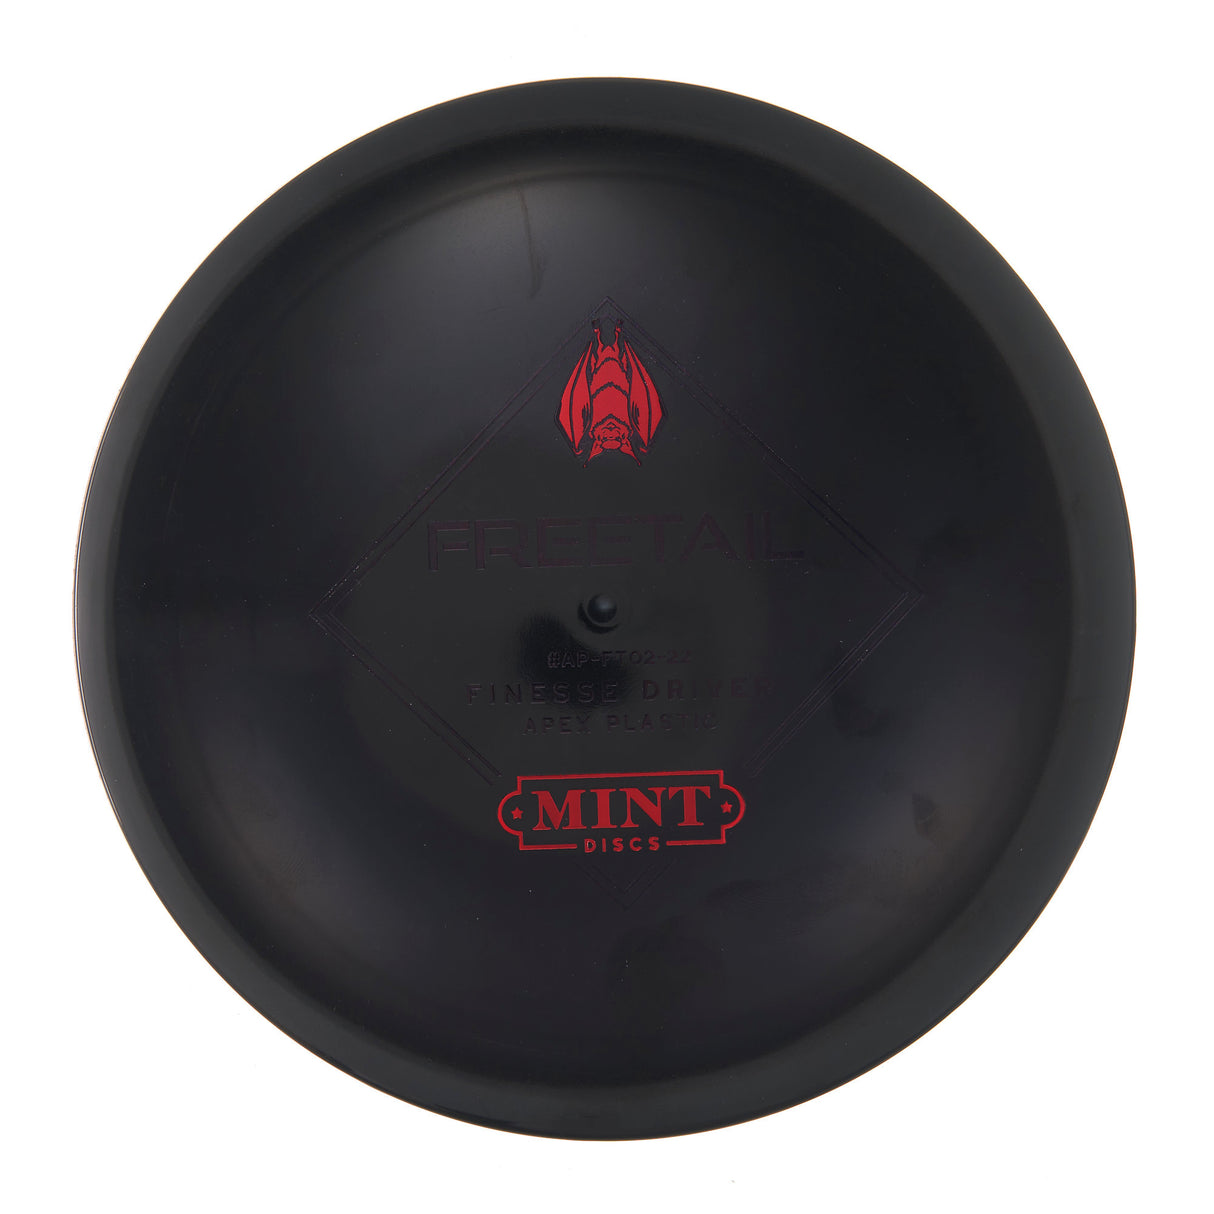 Mint Discs Freetail - Apex 177g | Style 0003